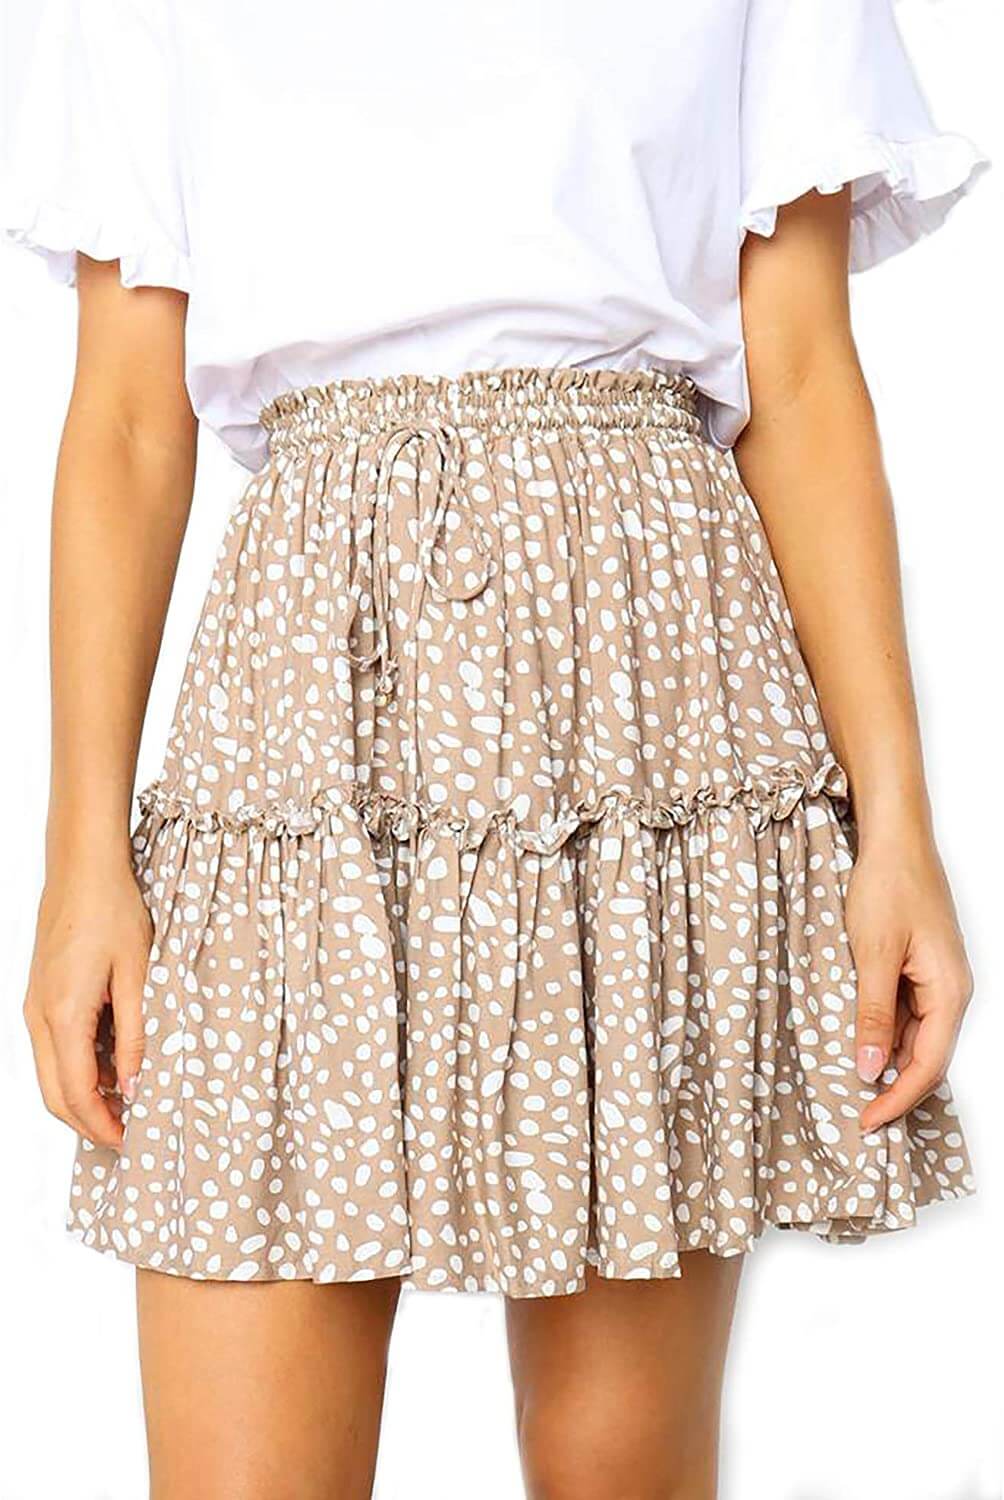 Relipop Women's Floral Flared Short Skirt Polka Dot Pleated Mini Skater Skirt with Drawstring - beandbuy